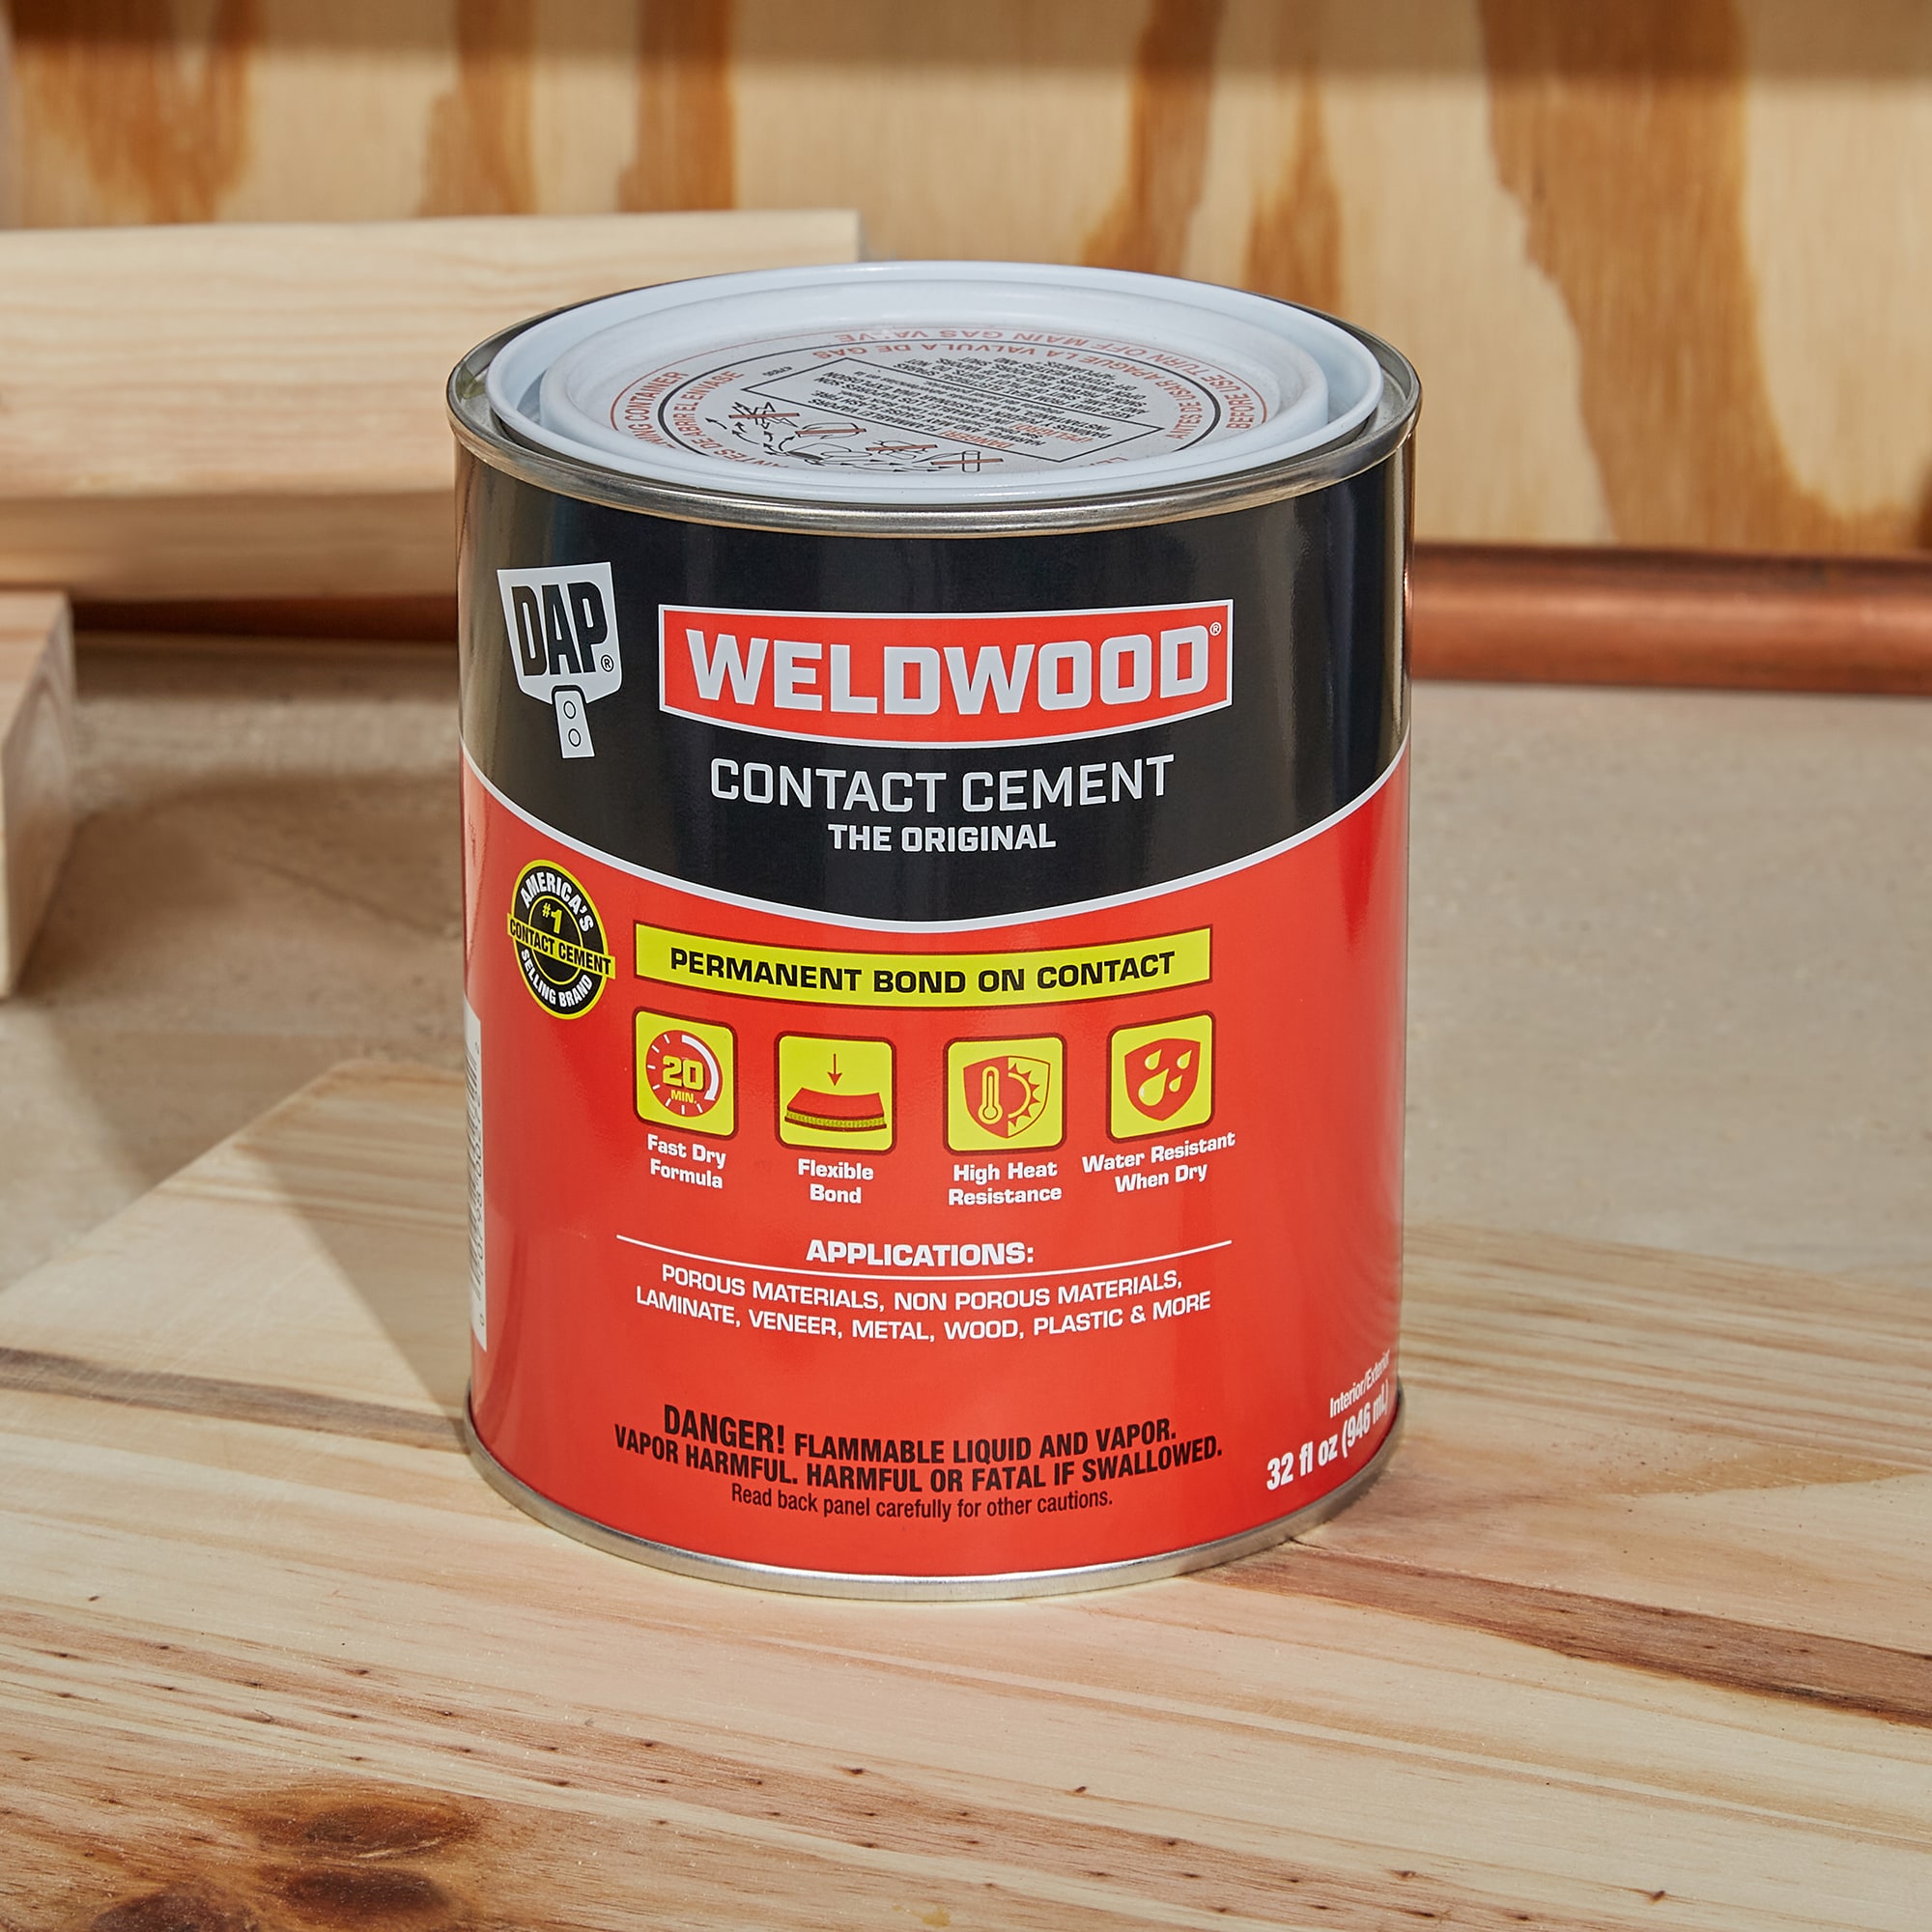 Weldwood Contact Adhesive